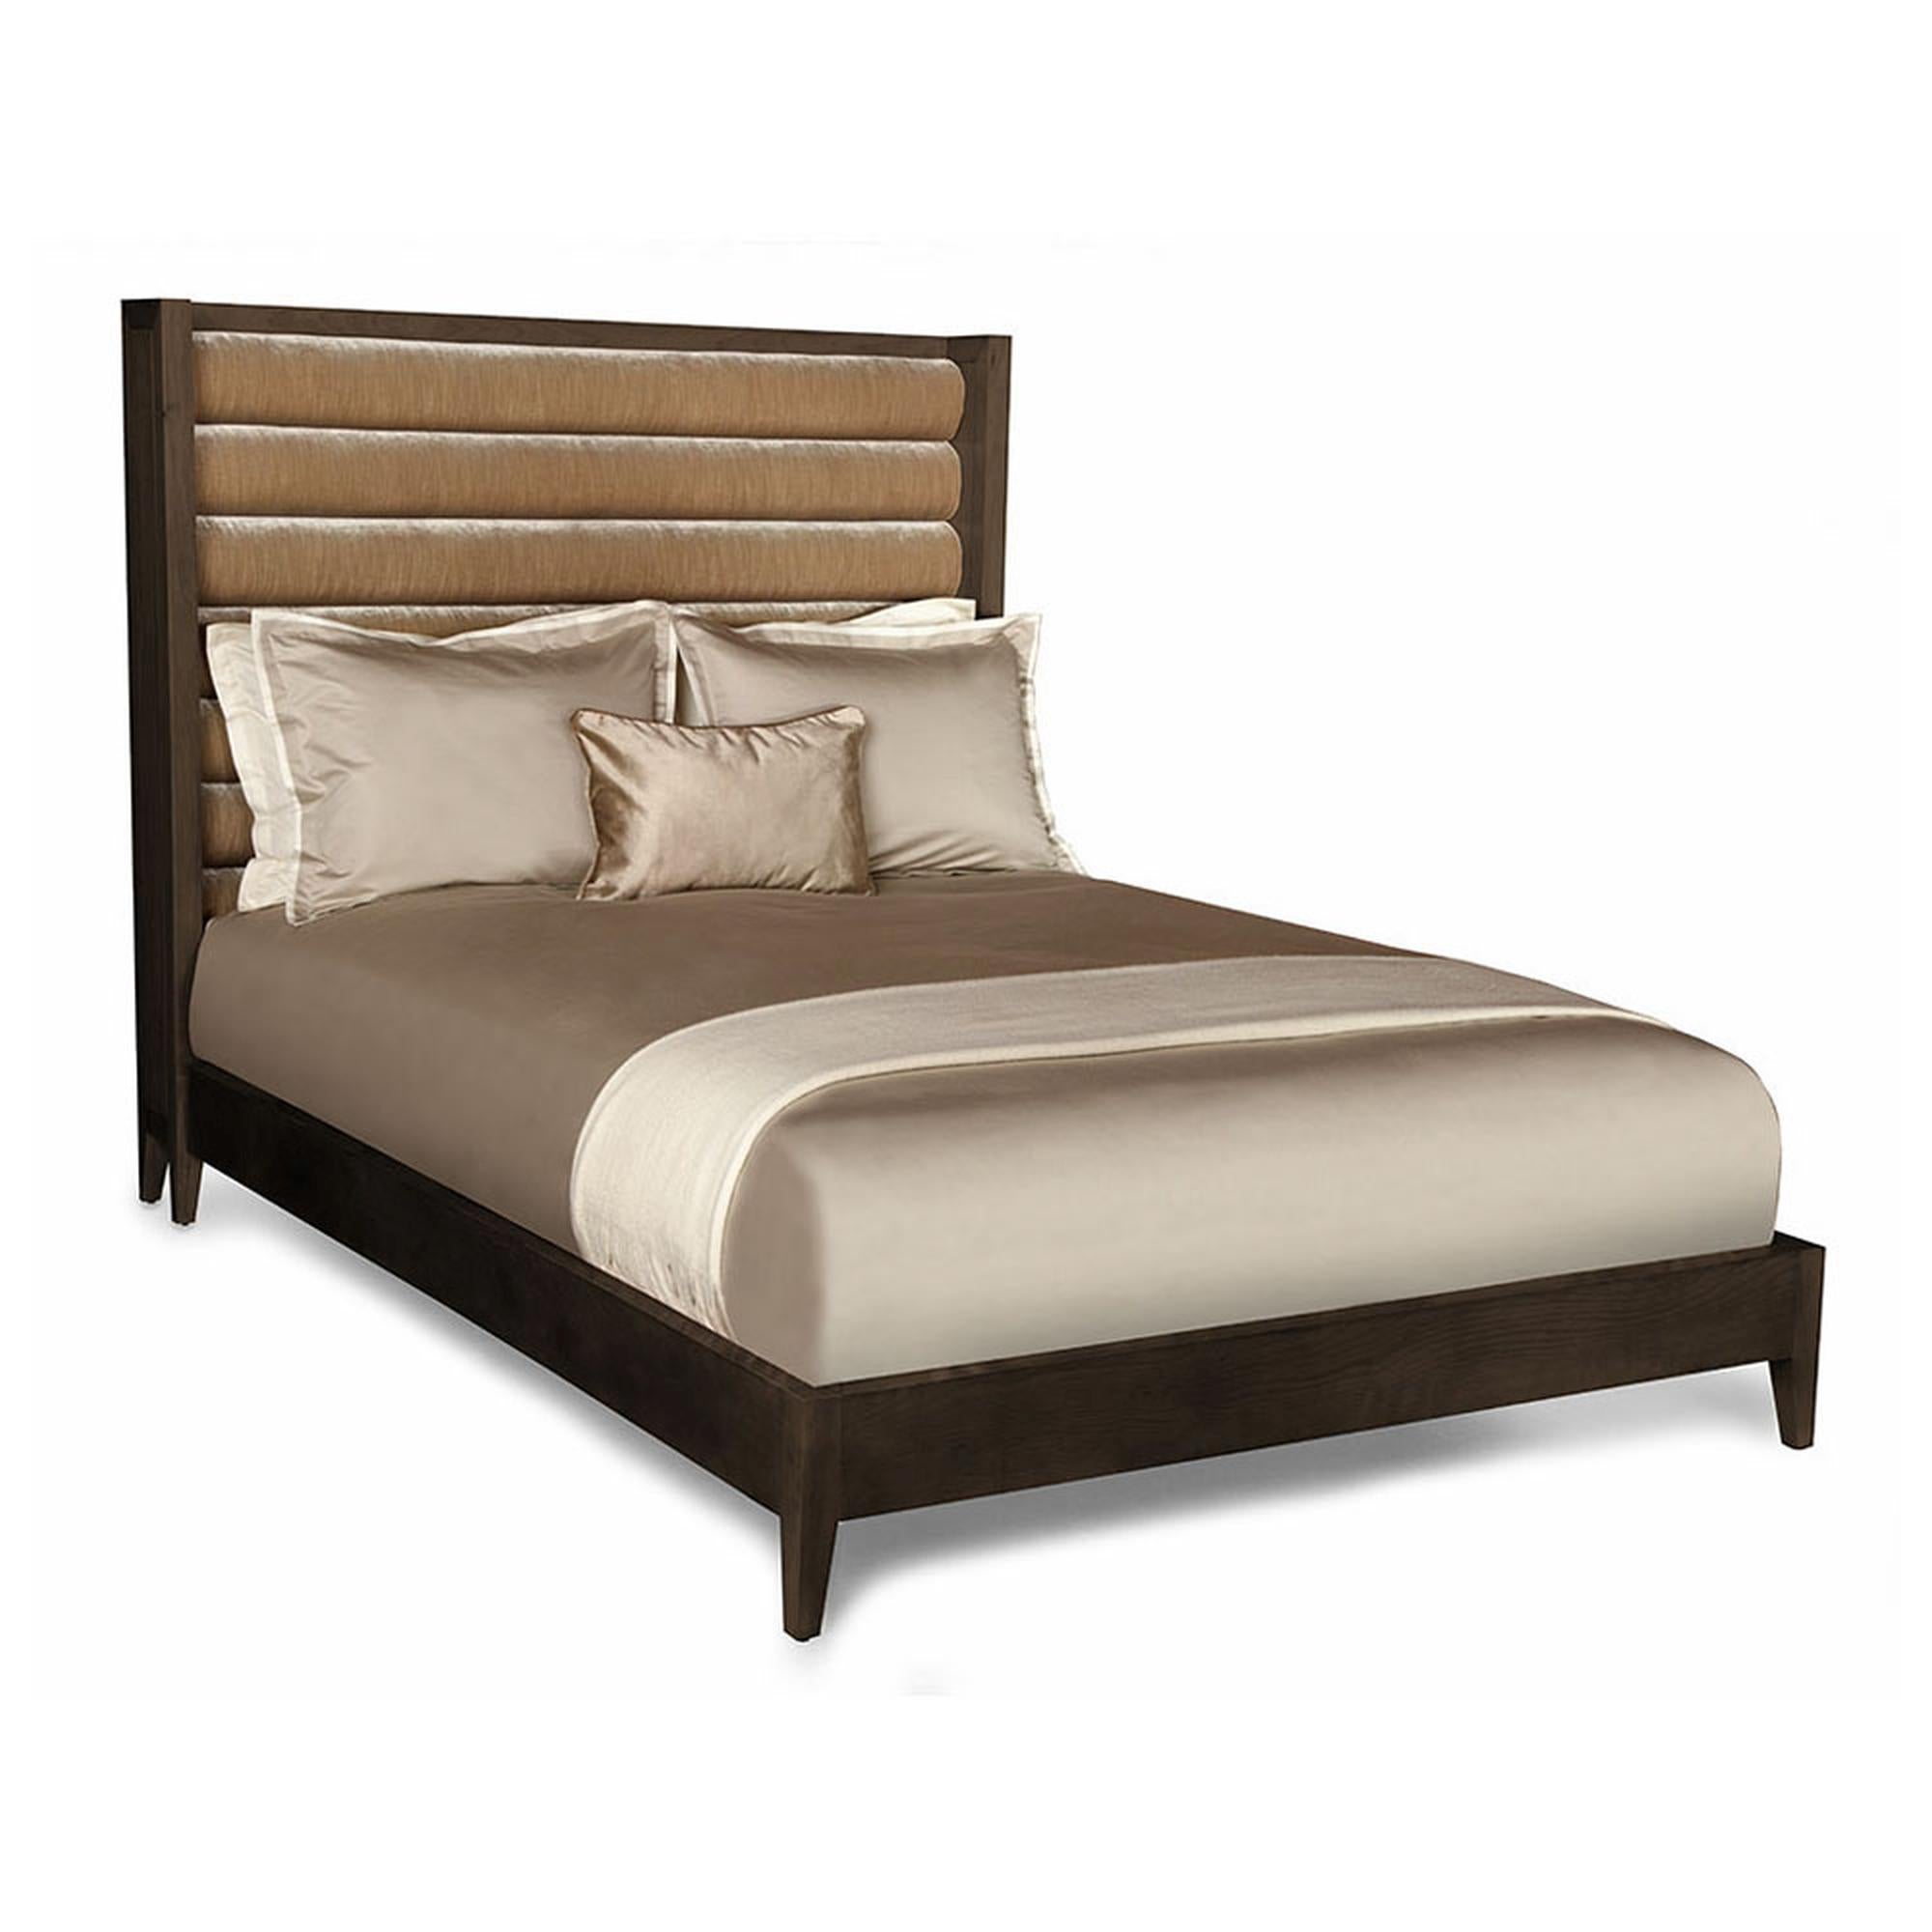 Das Crawford-Bett ist ein stilvolles und schickes Bett für das Schlafzimmer. Mit seinem horizontalen, getufteten Kopfteil, den konisch zulaufenden Beinen und dem blush gebeizten Holz bietet dieses Bett luxuriösen Komfort und strahlt gleichzeitig